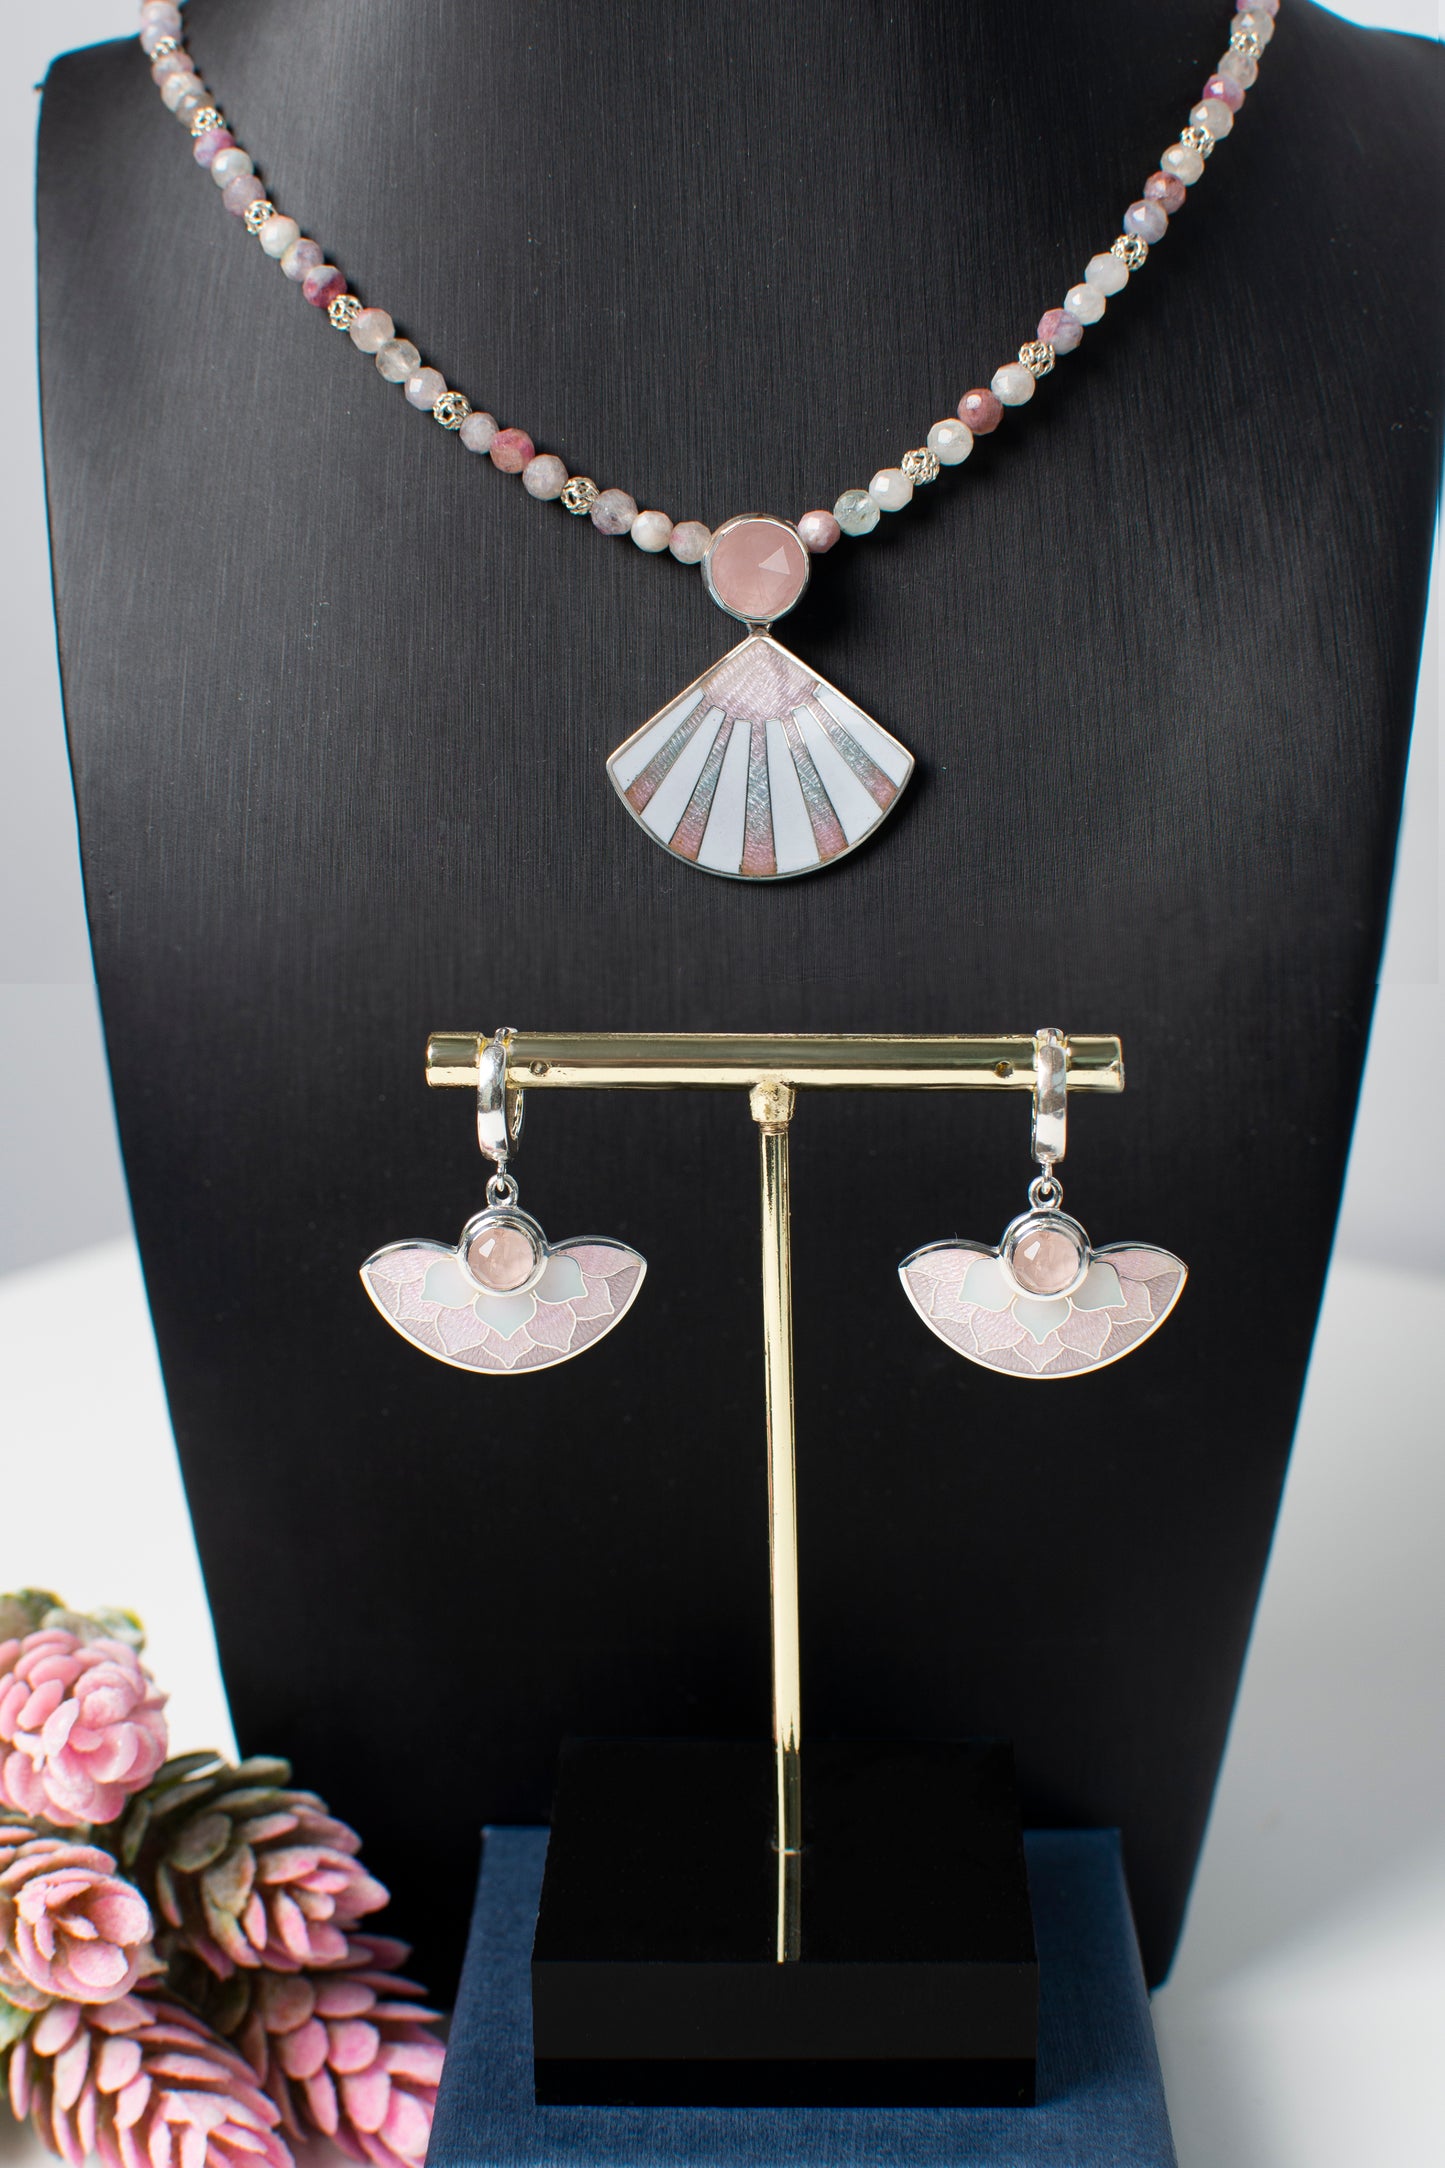 Cloisonne Enamel Pendant With Rose Quartz And Tourmaline Necklace